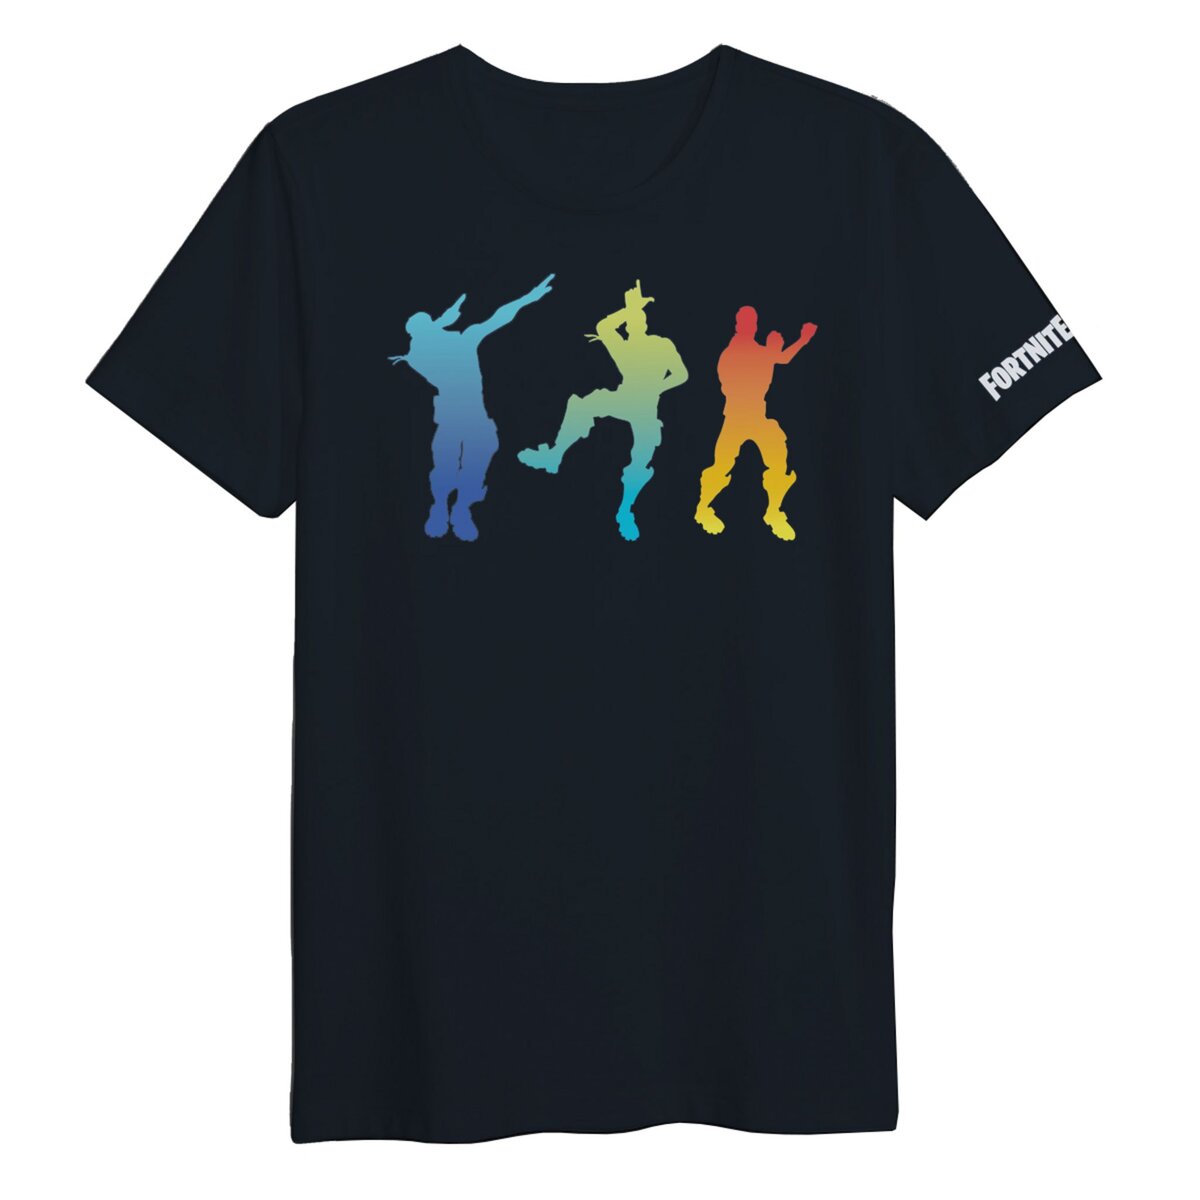 T-Shirt Fortnite Exclusivité Auchan 3 Dances Noir Taille Enfant 8ans